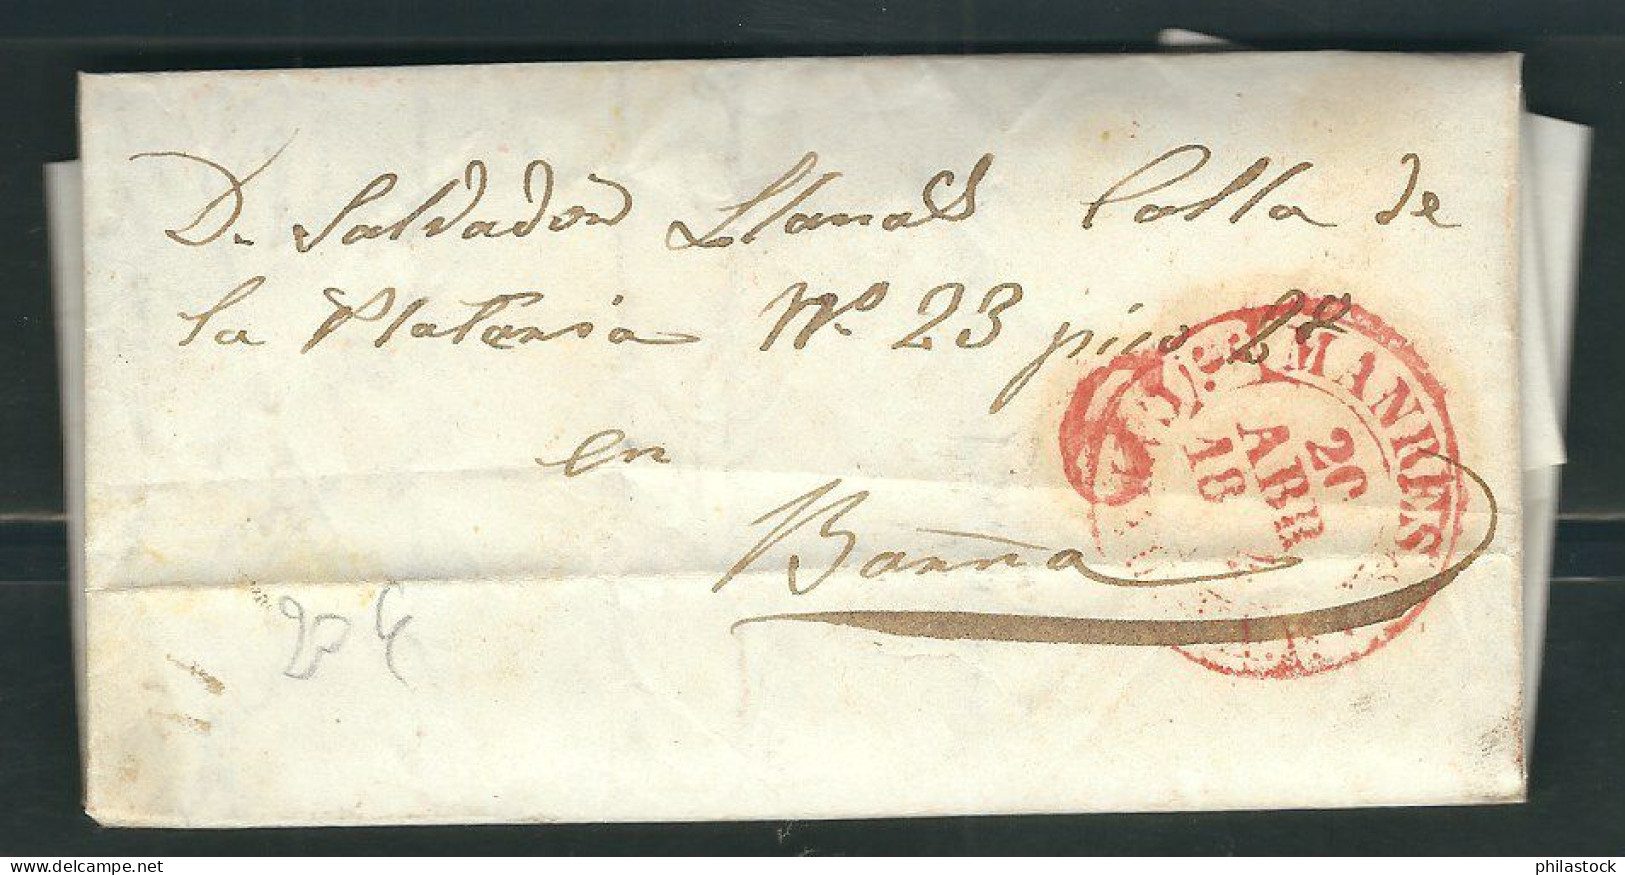 ESPAGNE 1844 Marque Postale  Taxée De Manresa - ...-1850 Vorphilatelie